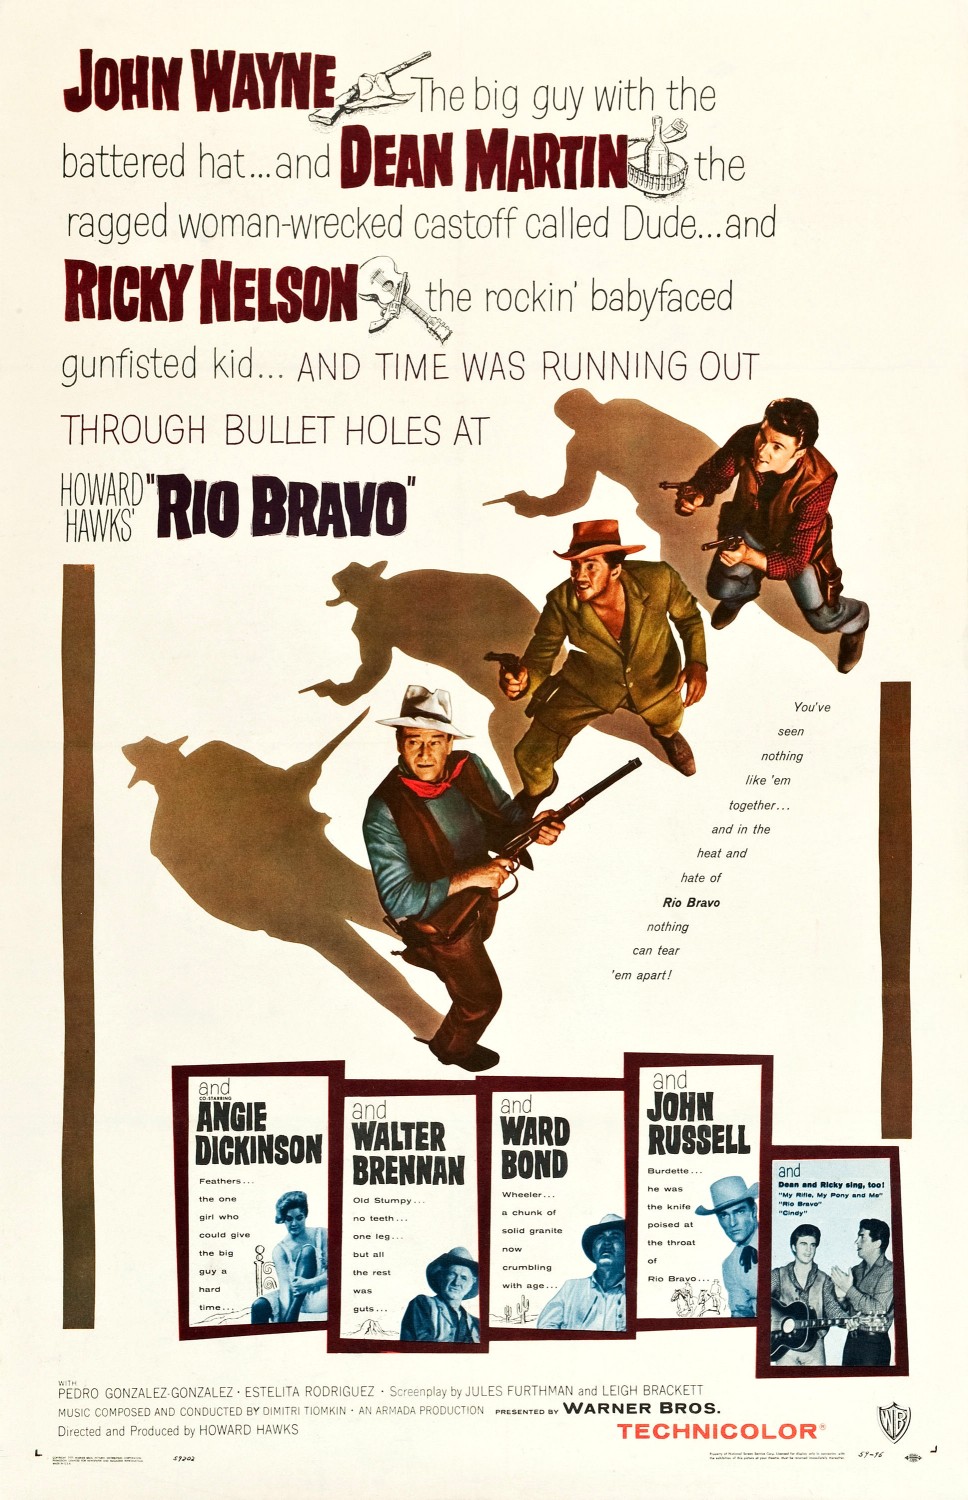 Nonton film Rio Bravo layarkaca21 indoxx1 ganool online streaming terbaru